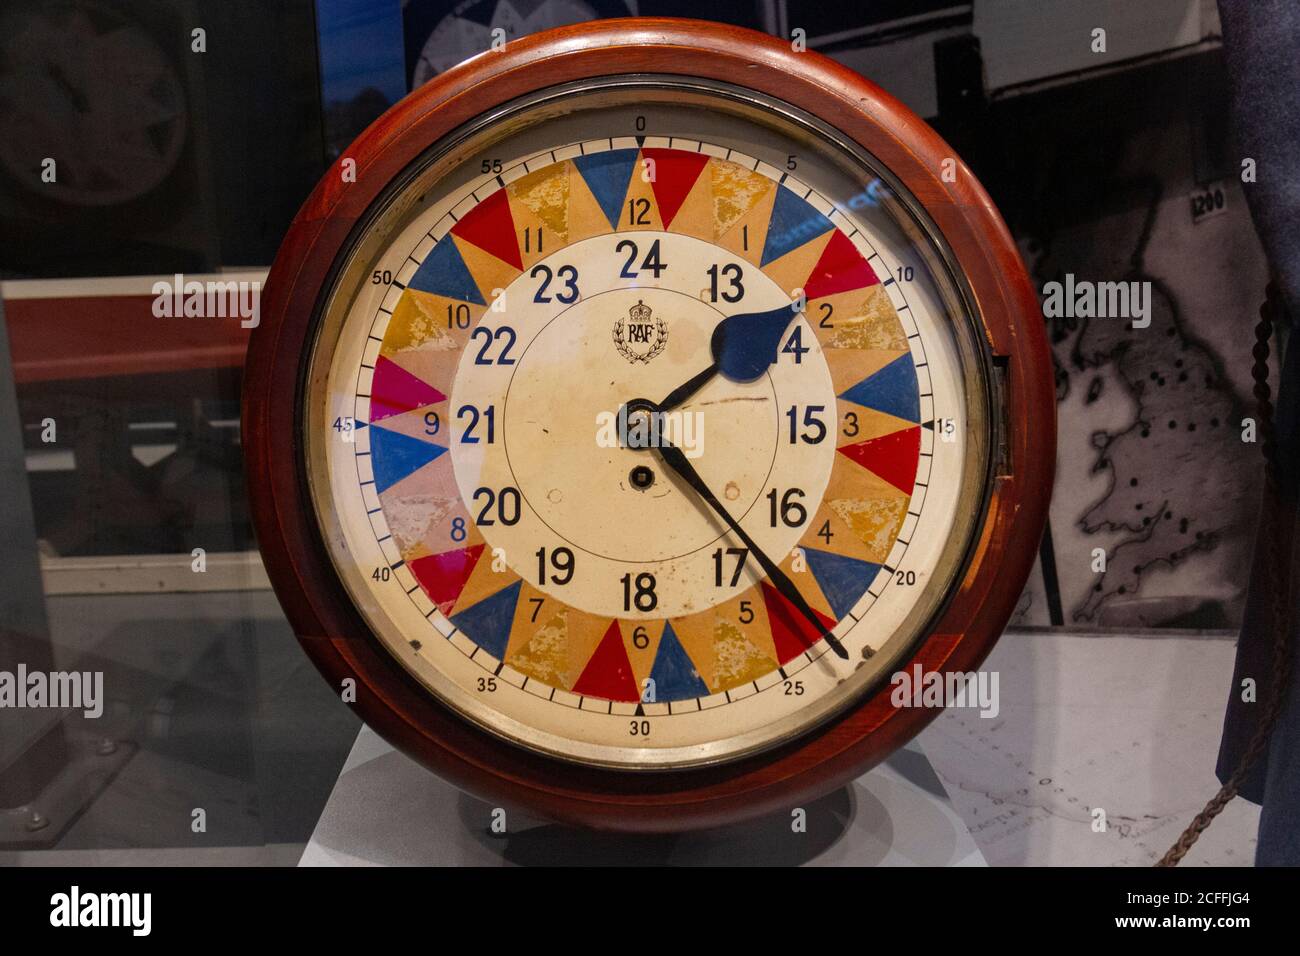 Eine Uhr, die in einem Operationsraum verwendet wird, um Bewegungen feindlicher Flugzeuge zu verfolgen, die im RAF Museum, London, Großbritannien, ausgestellt werden. Stockfoto